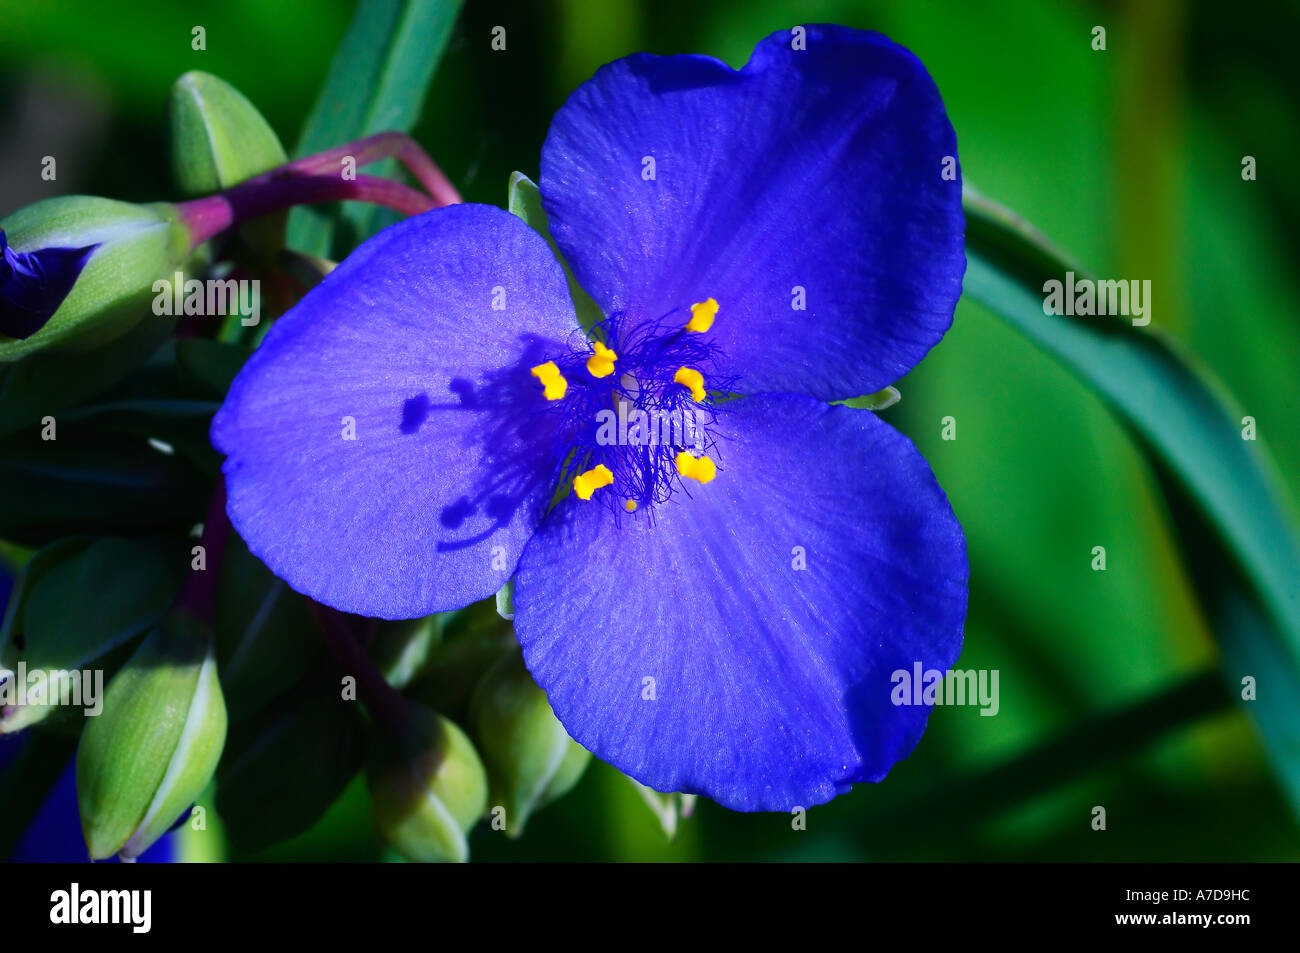 Asiatic Dayflower or Common Dayflower (Commelina communis) Stock Photo